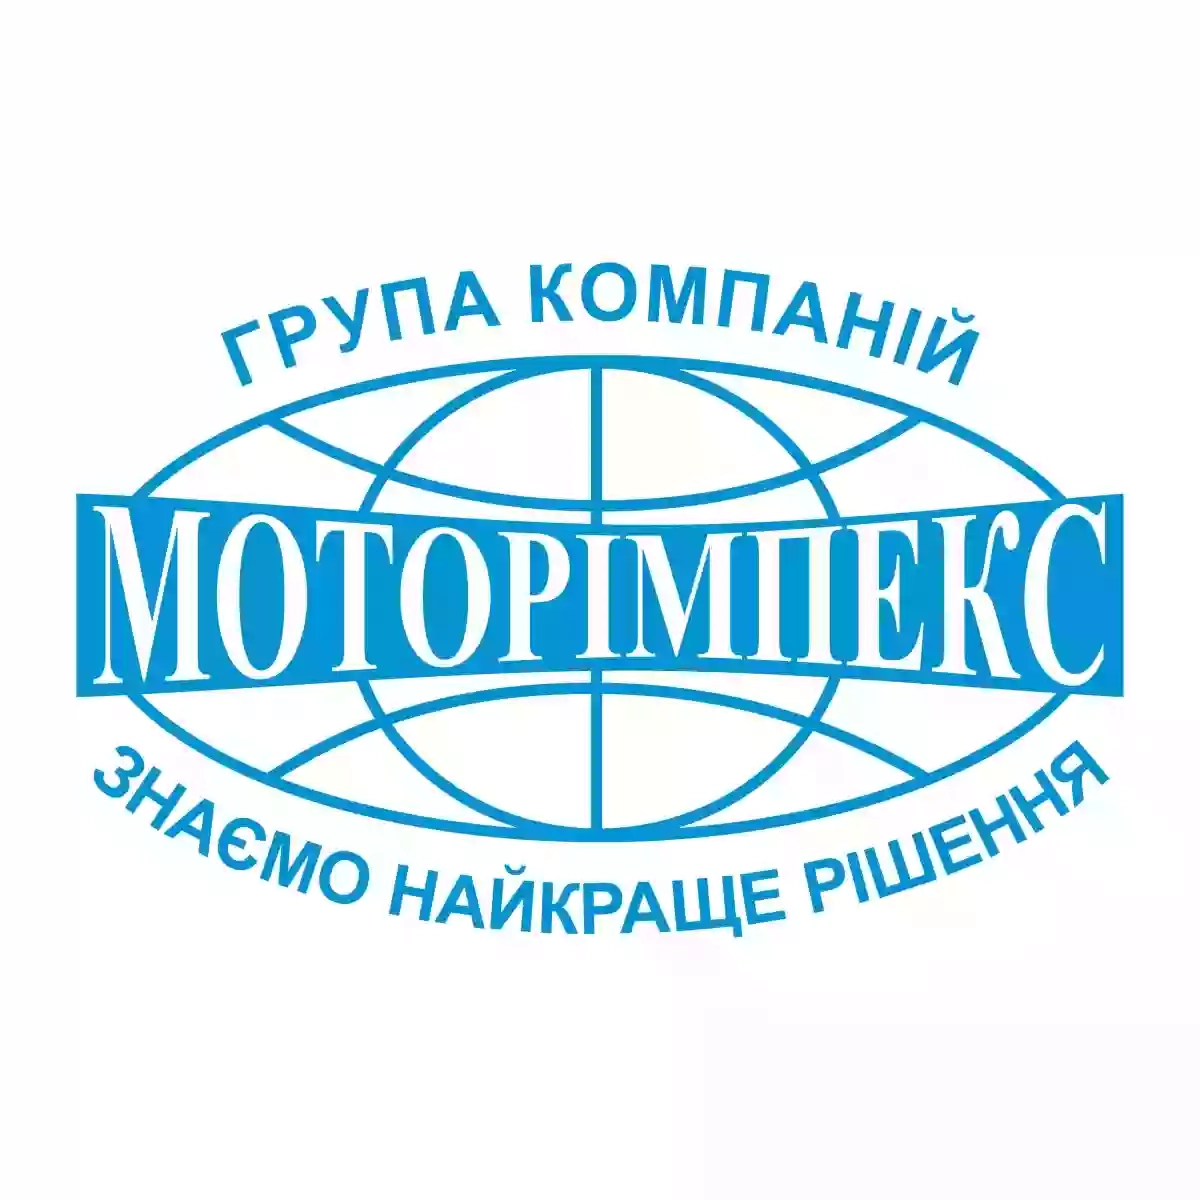 Група компаній "Моторімпекс" — Гідравлічні комплектуючі, Маслостанції, Гідроциліндри